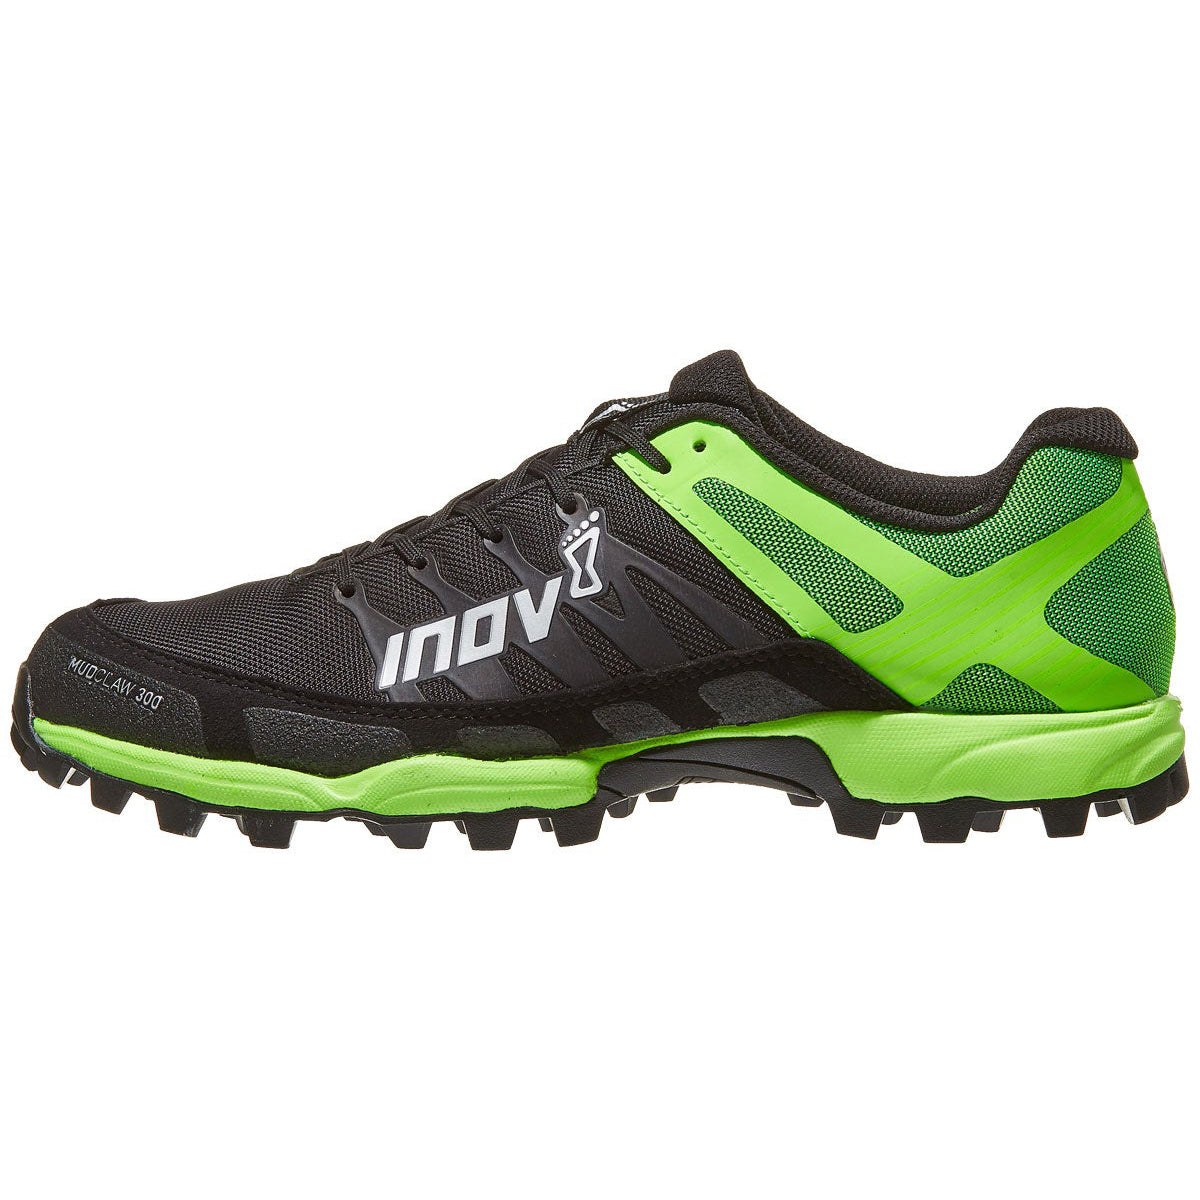 Inov-8 Mudclaw 300 by Inov-8 | Footwear - goHUNT Shop